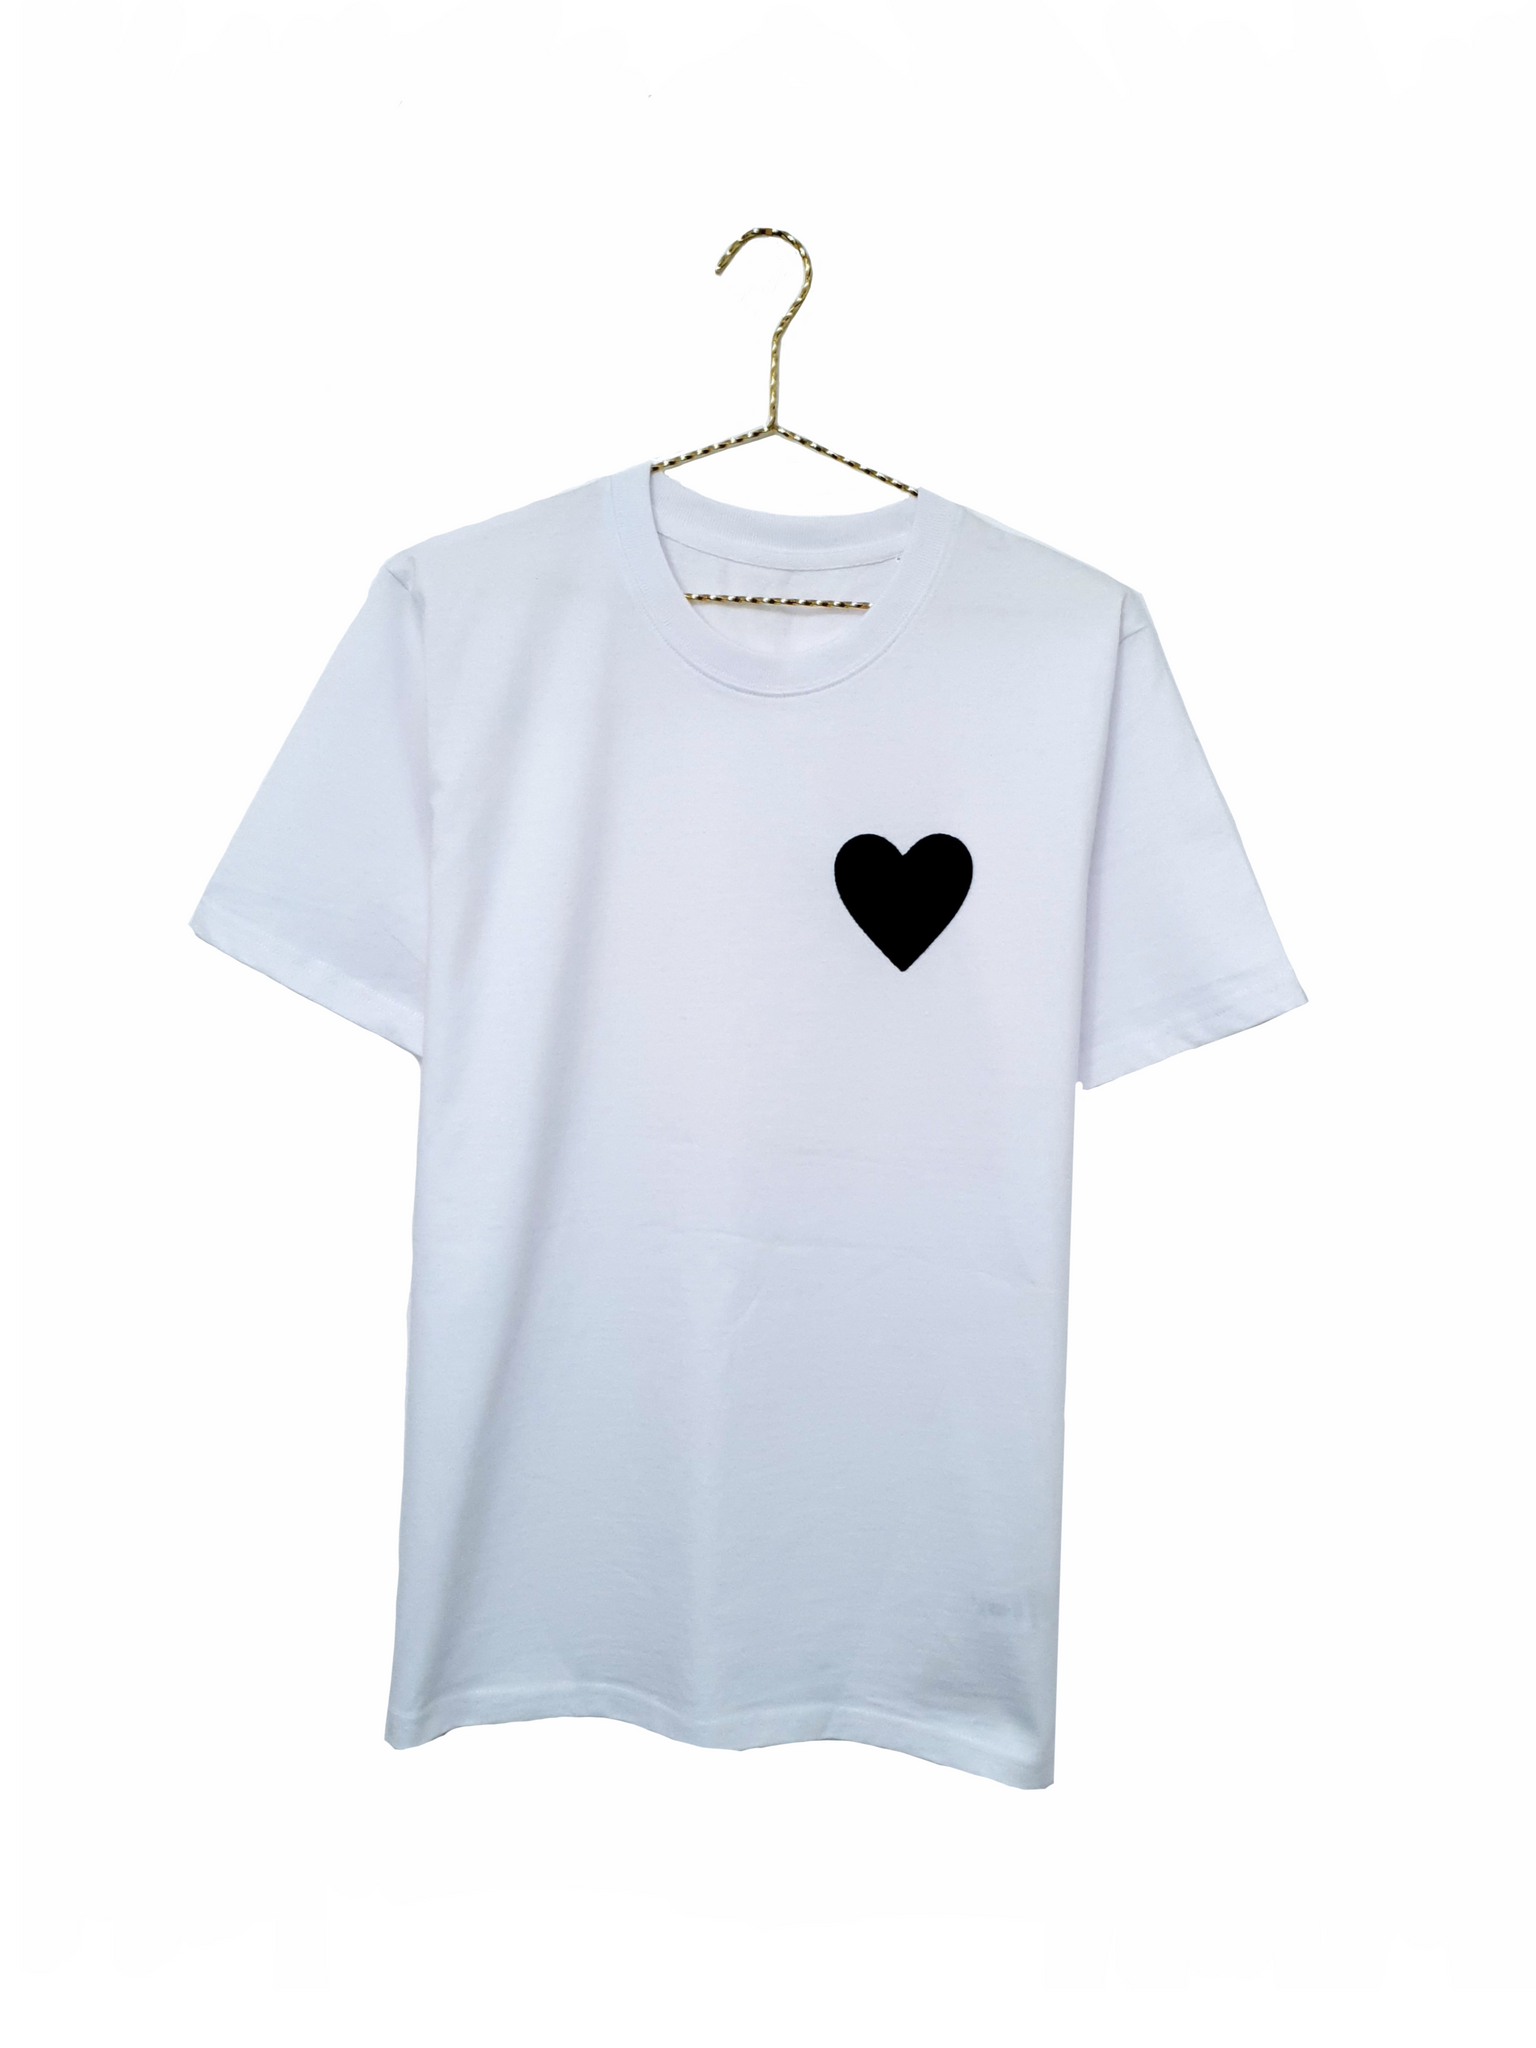 Black Heart T-Shirt - White | Unisex